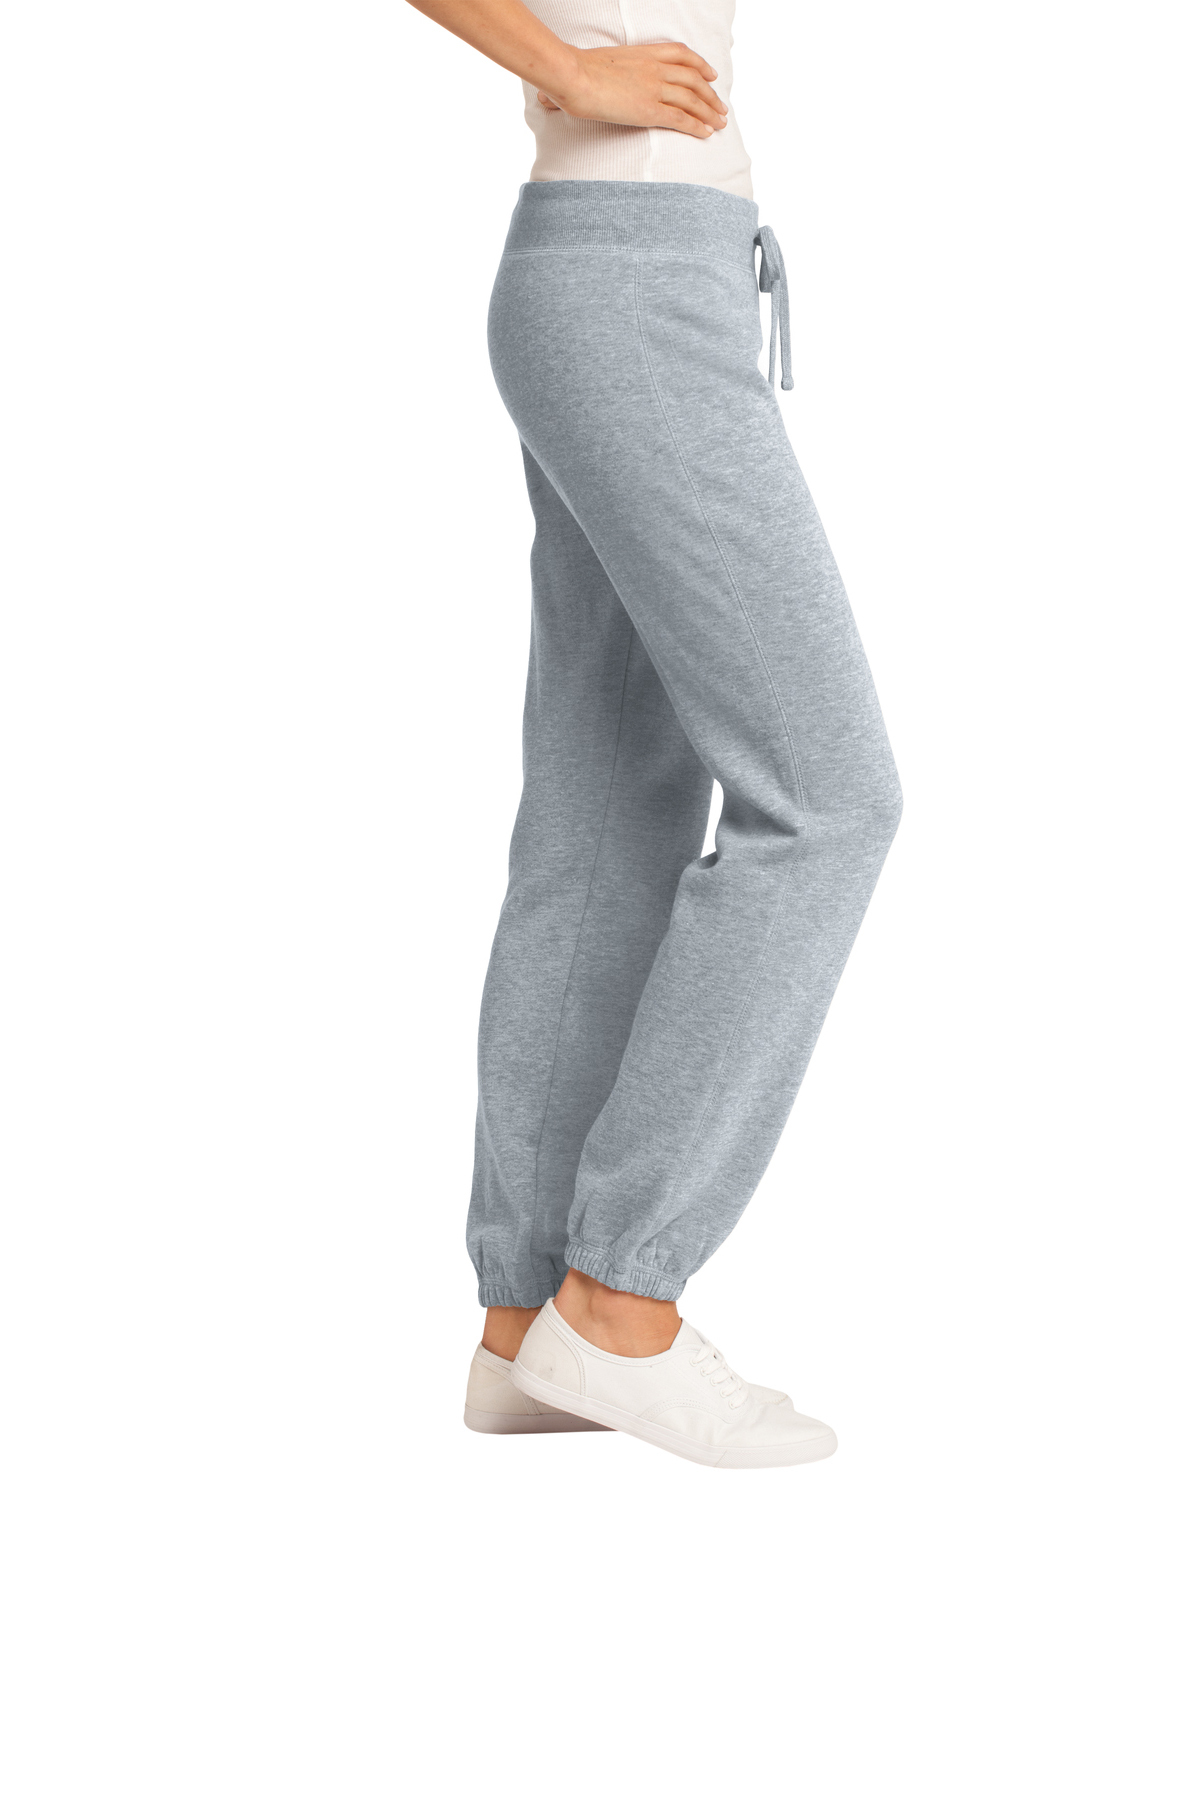 District - Juniors Core Fleece Pant | Product | SanMar